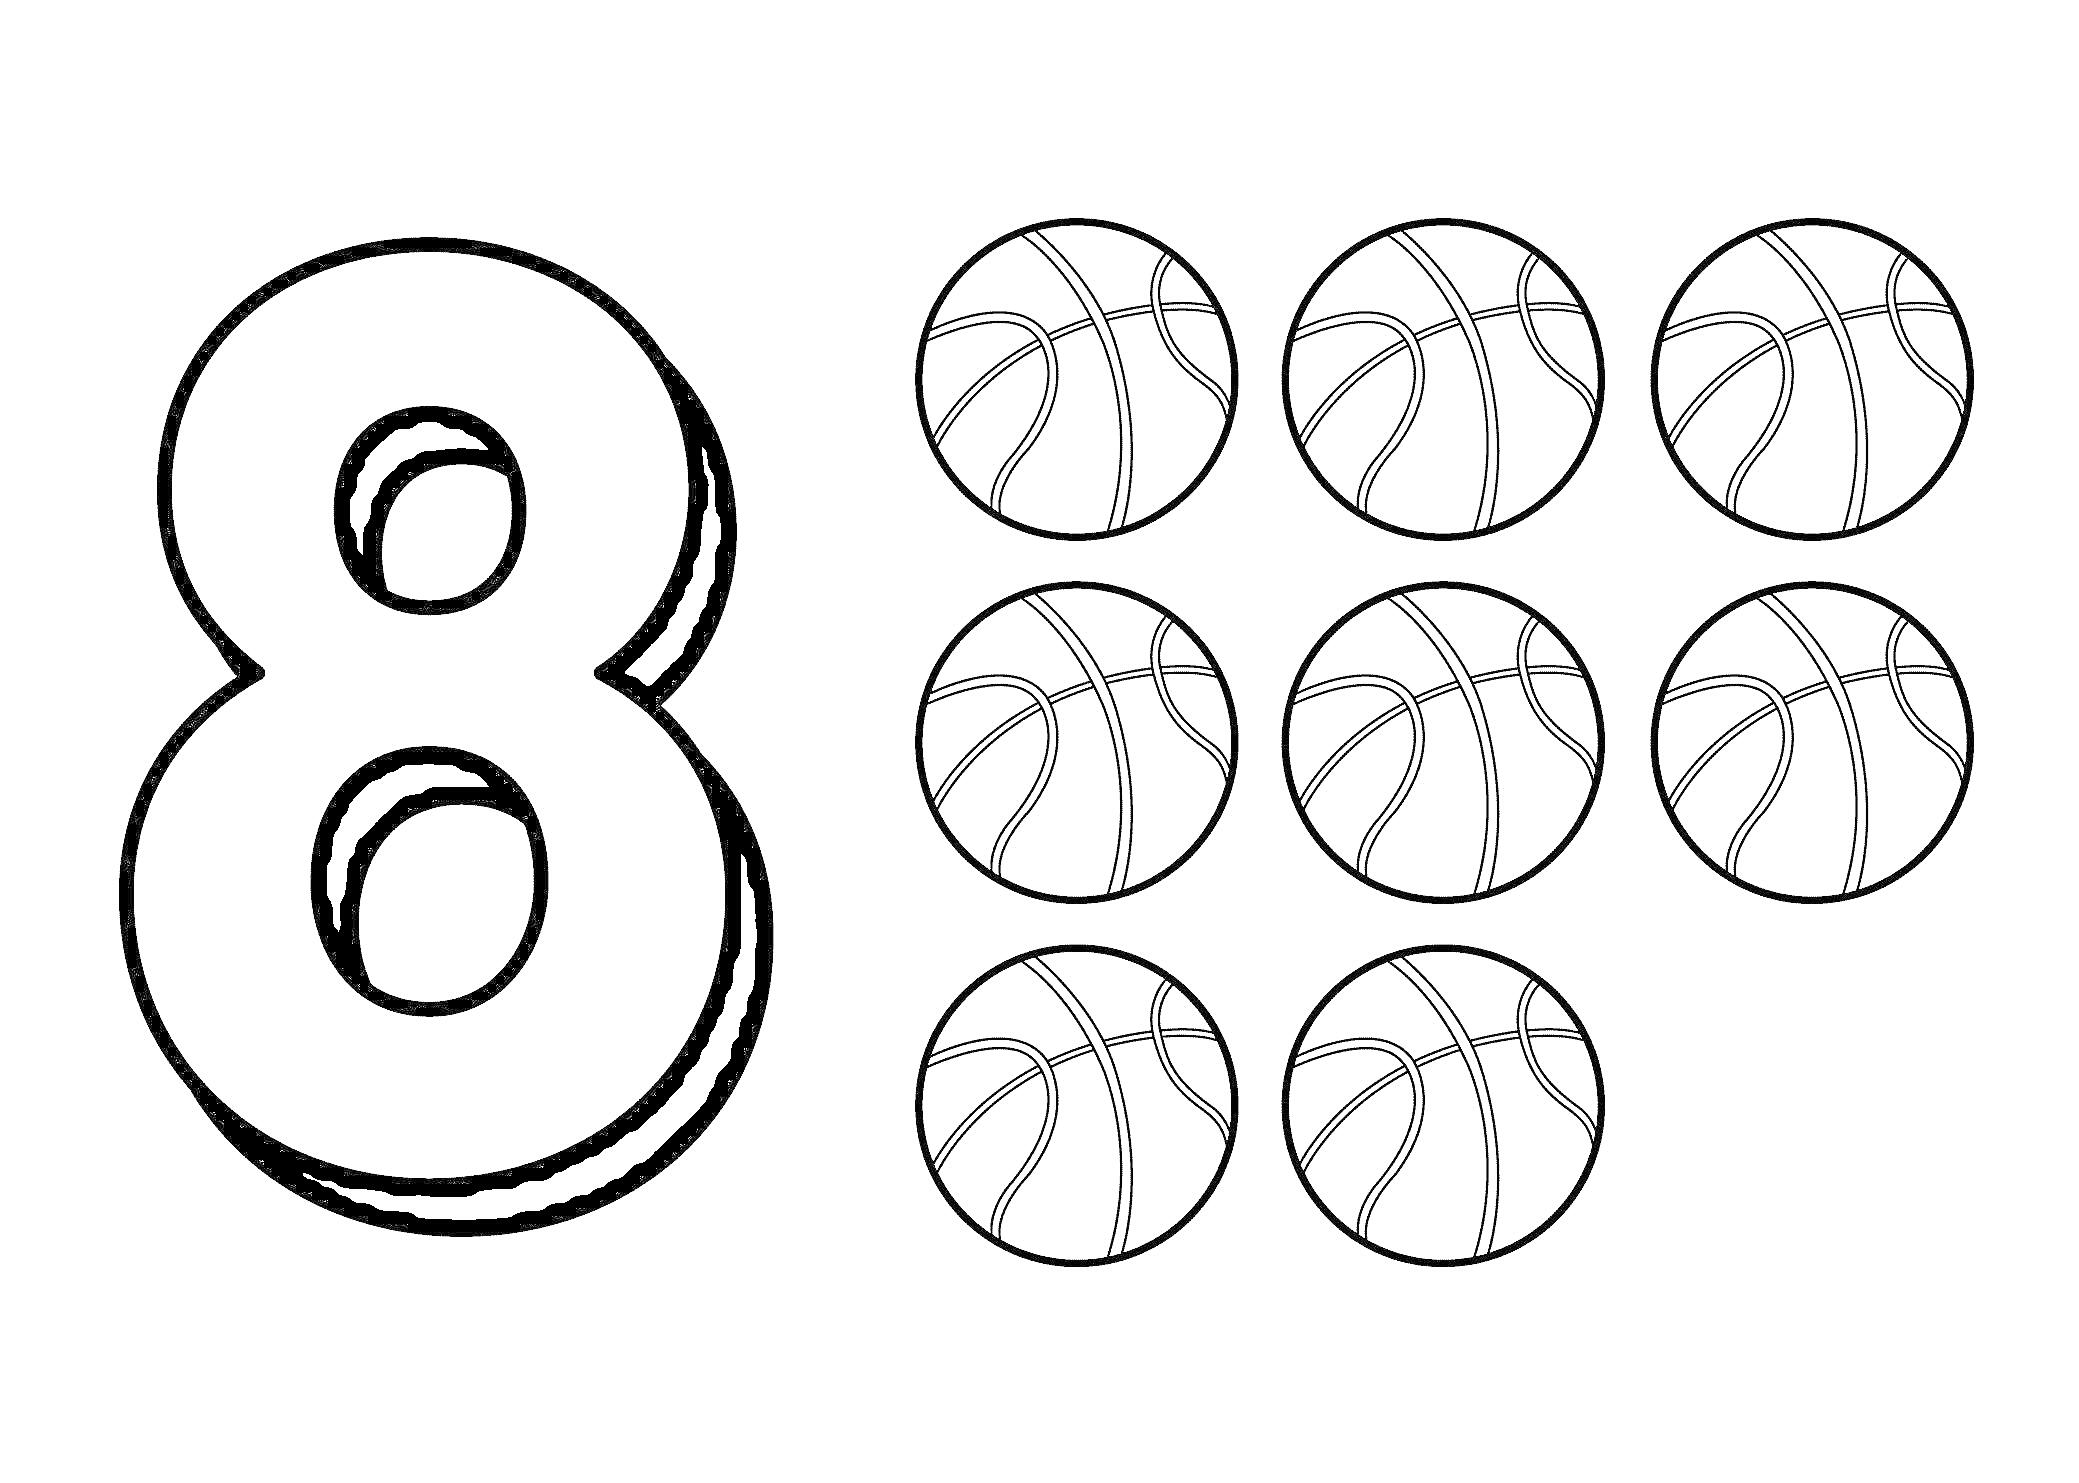 Раскраска Цифра 8 и восемь баскетбольных мячей